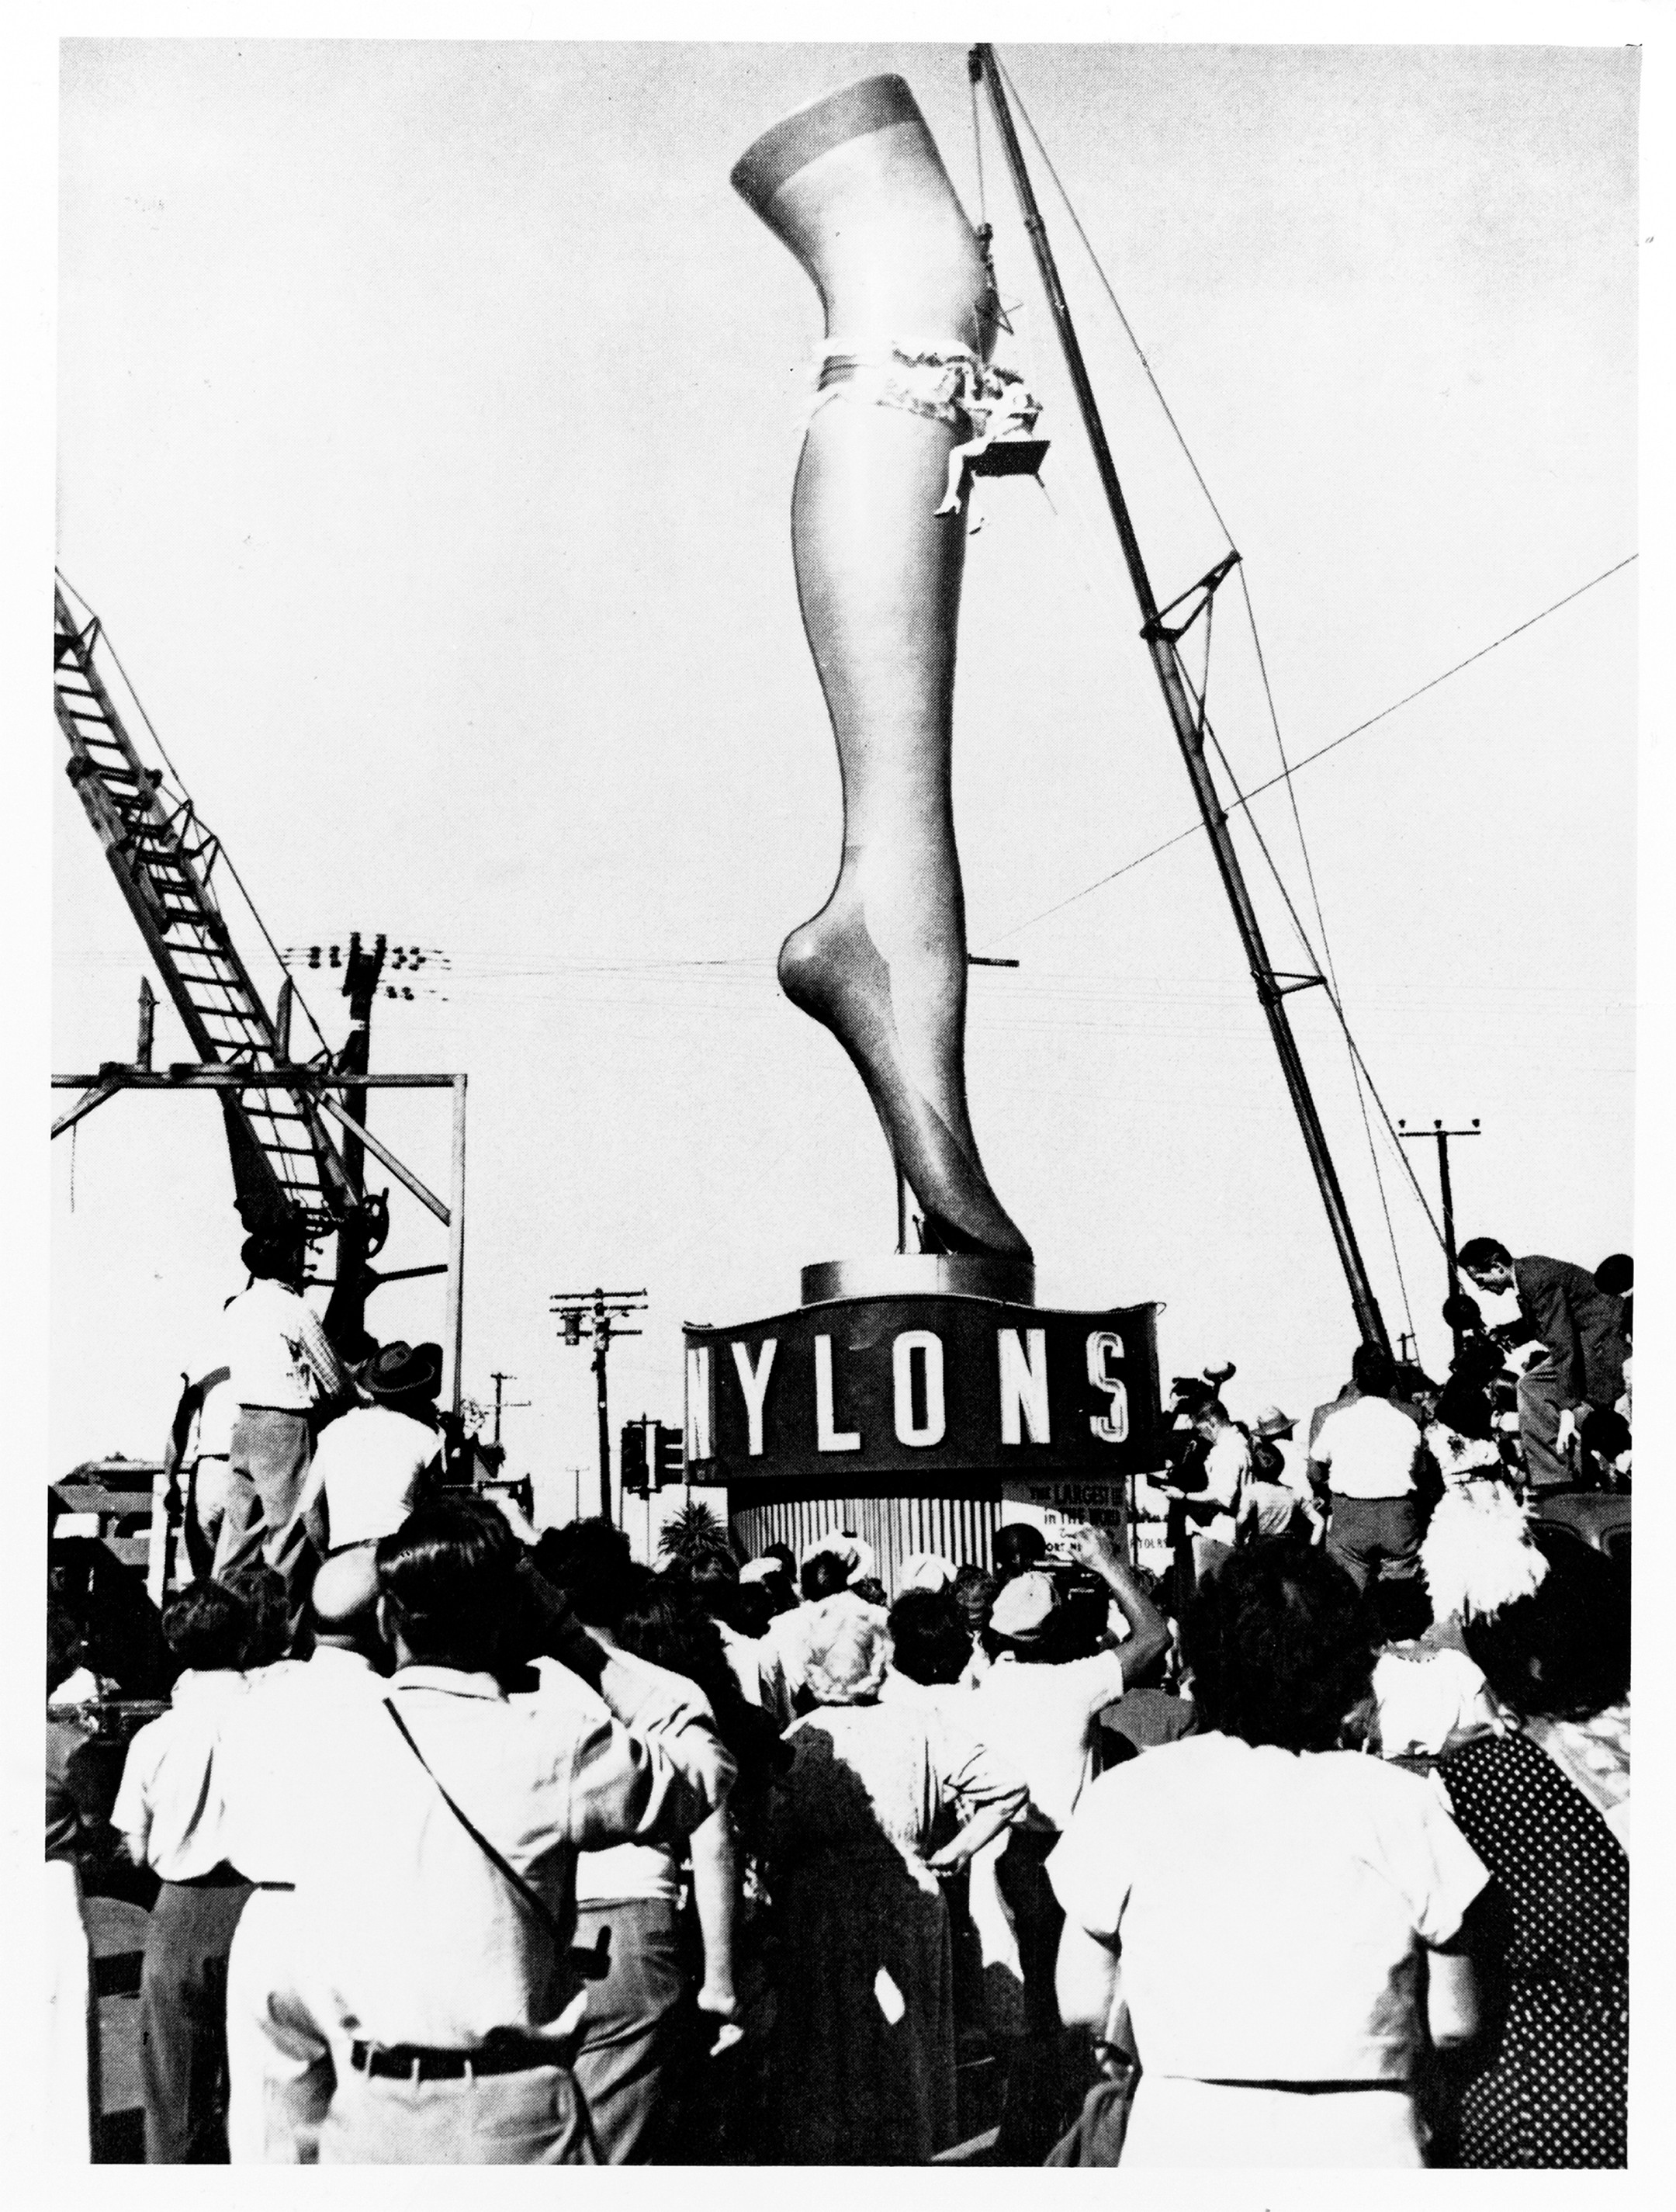 Реклама нейлона в&nbsp;Лос-Анджелесе: манекен высотой в&nbsp;10&nbsp;м. © Hagley Museum and Library